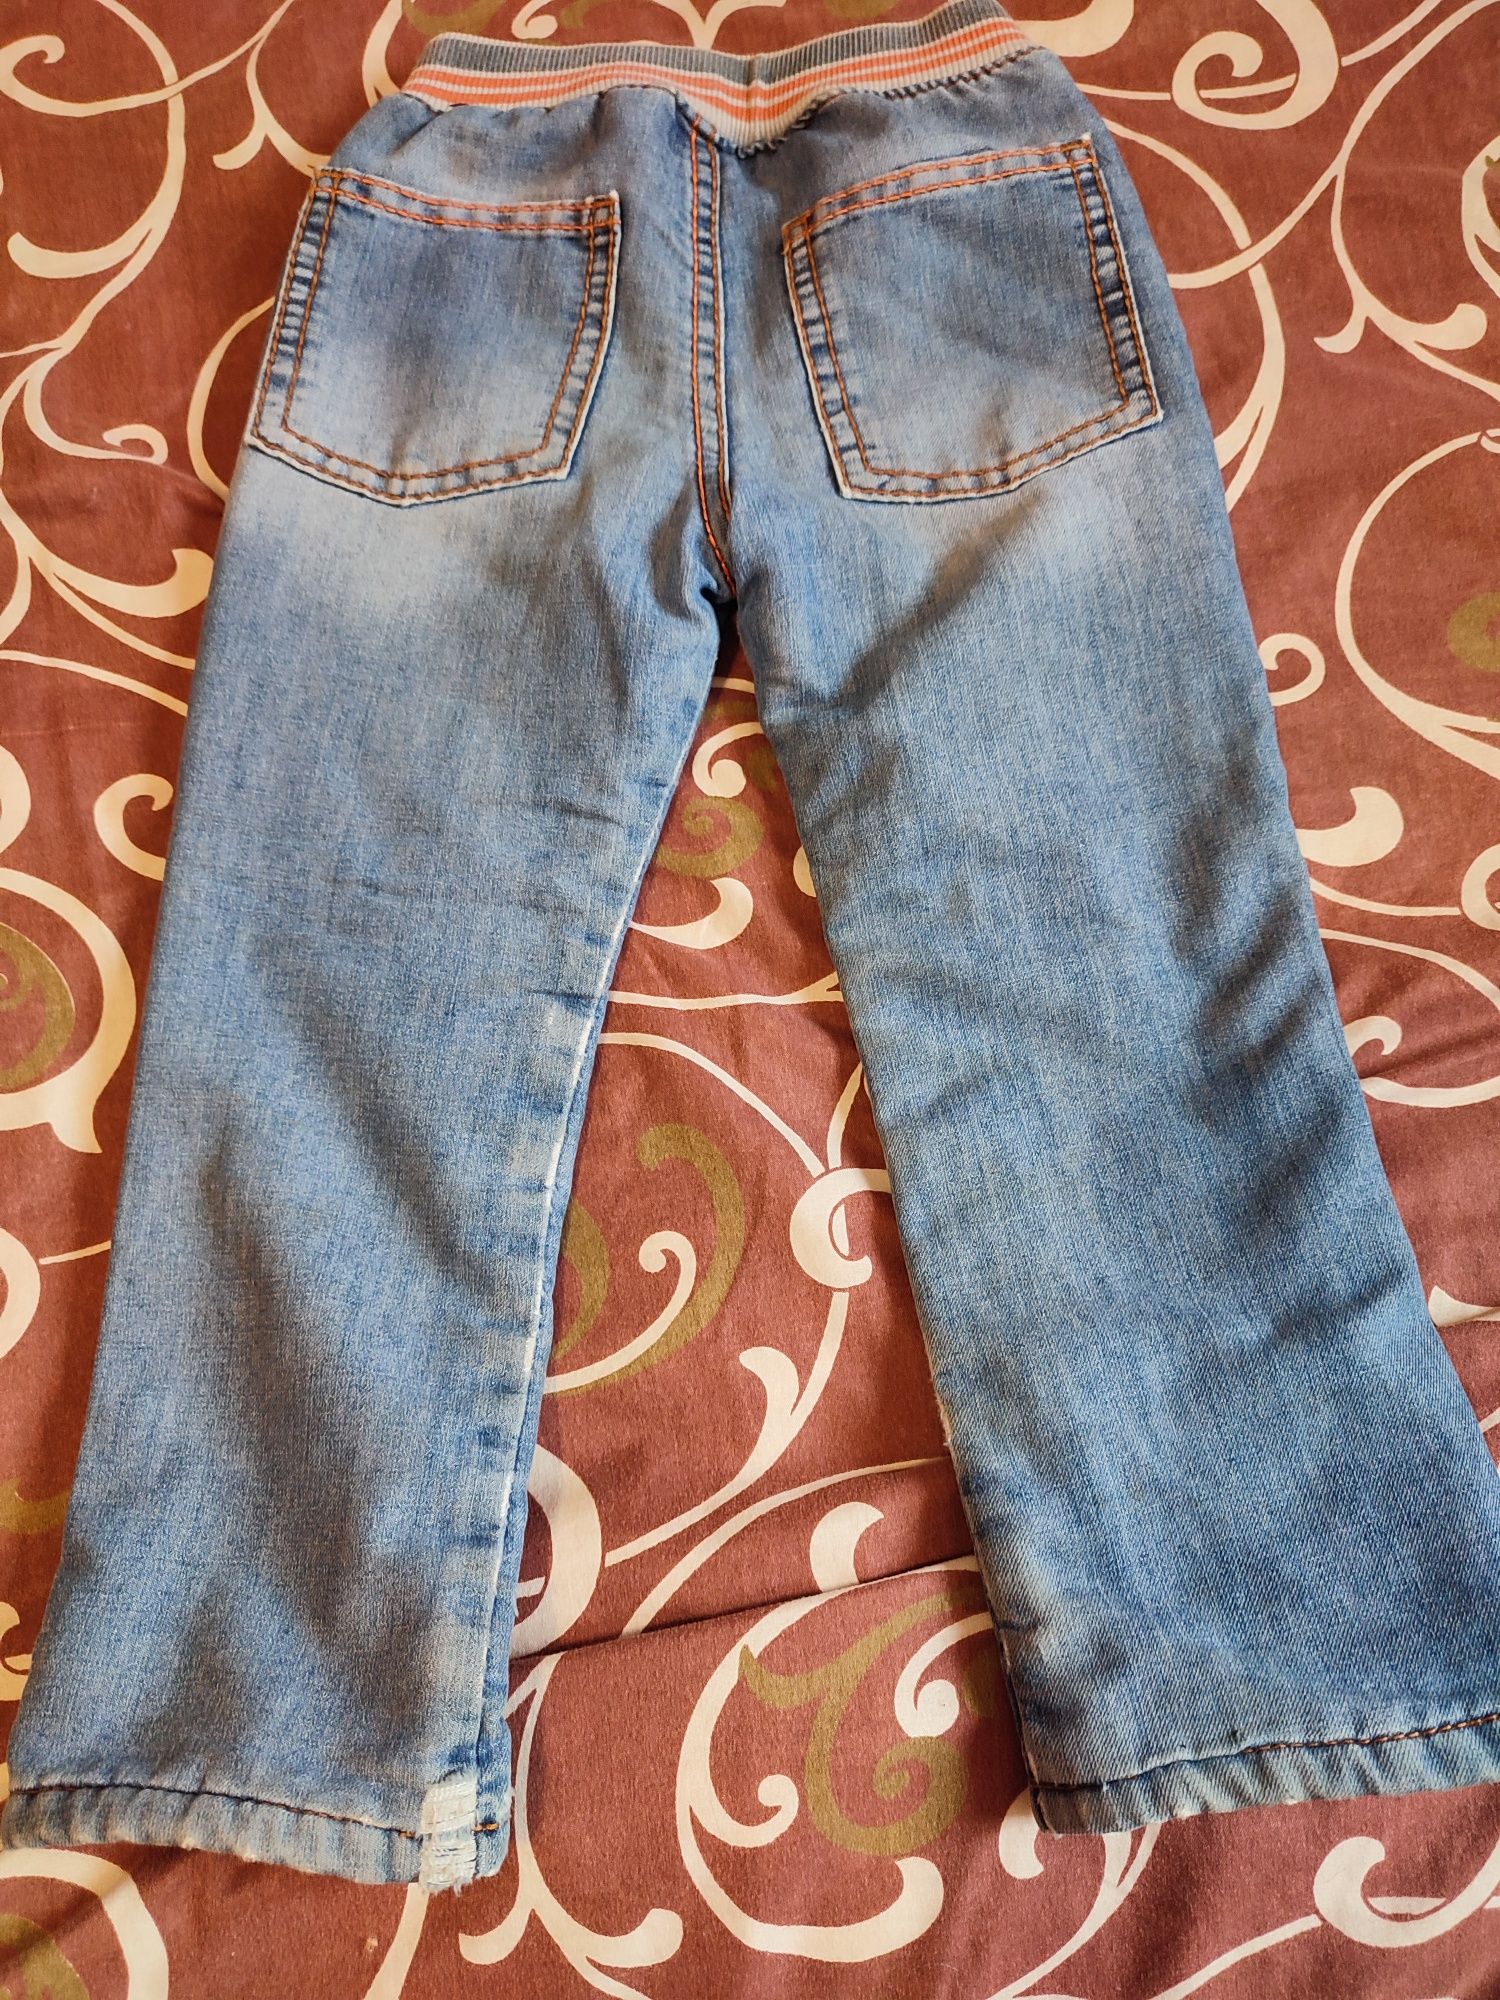 Теплые джинсы на рост 98 см, 2-3 года